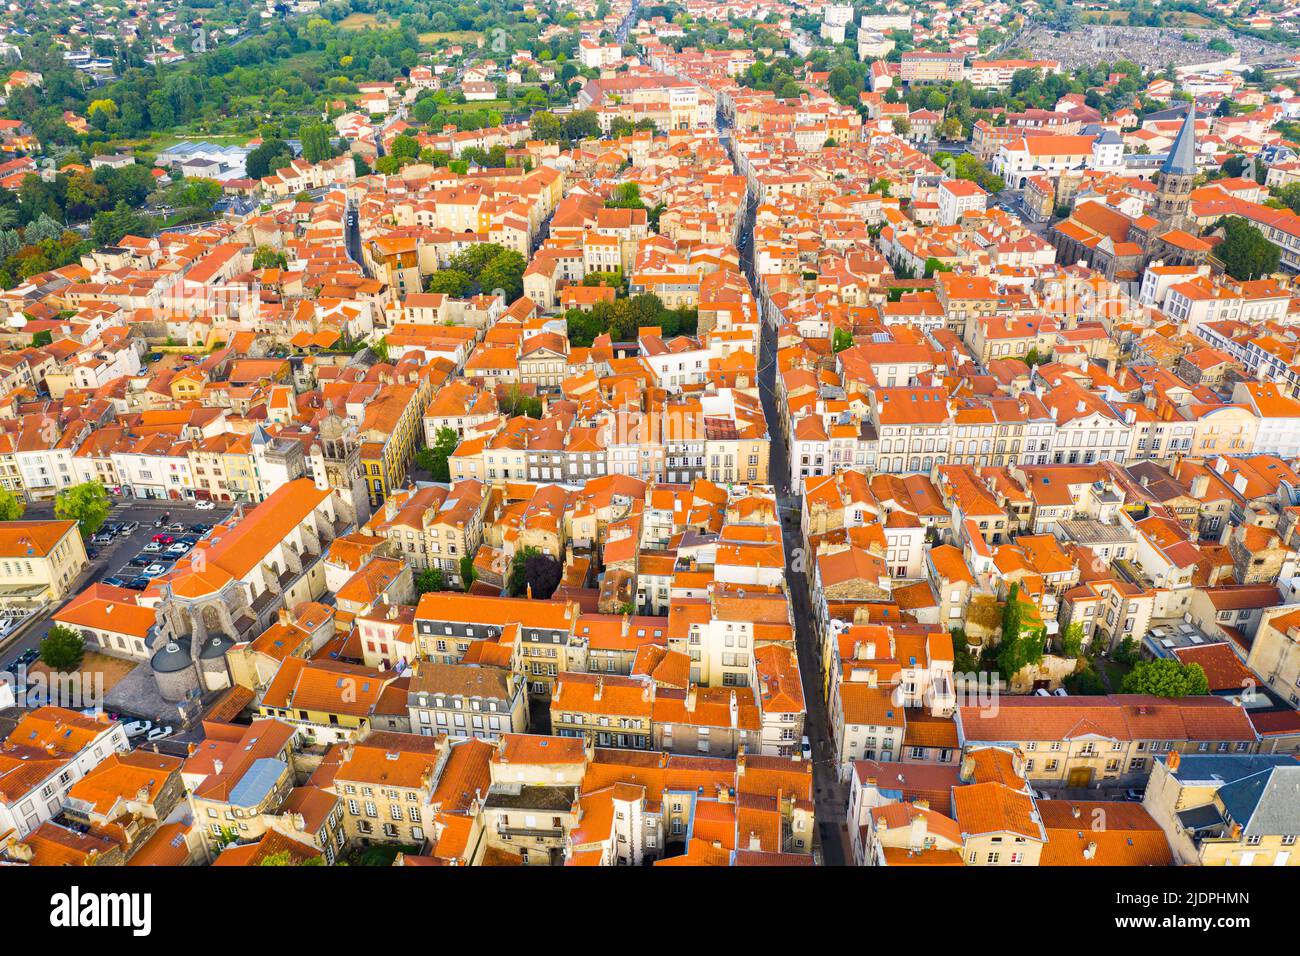 Veduta aerea della zona residenziale della città di Riom, Auvergne, Francia Foto Stock